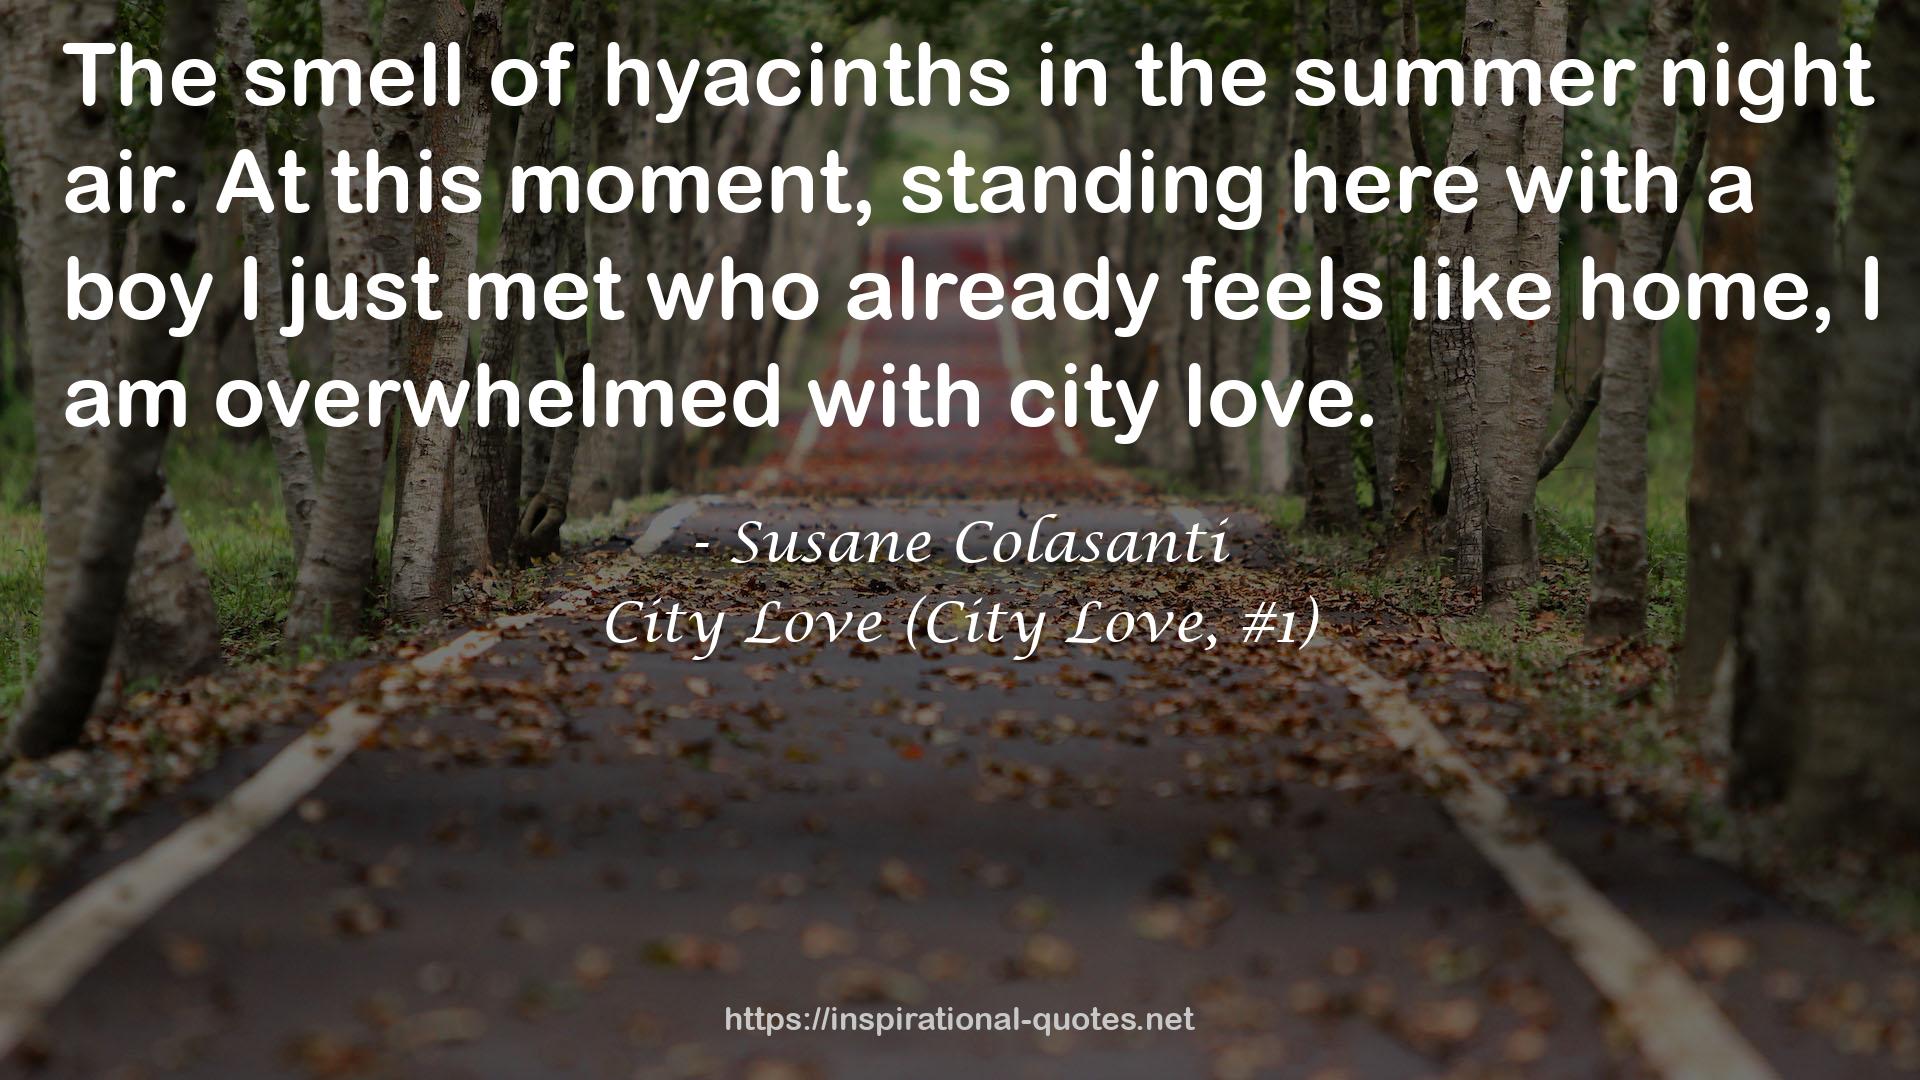 City Love (City Love, #1) QUOTES